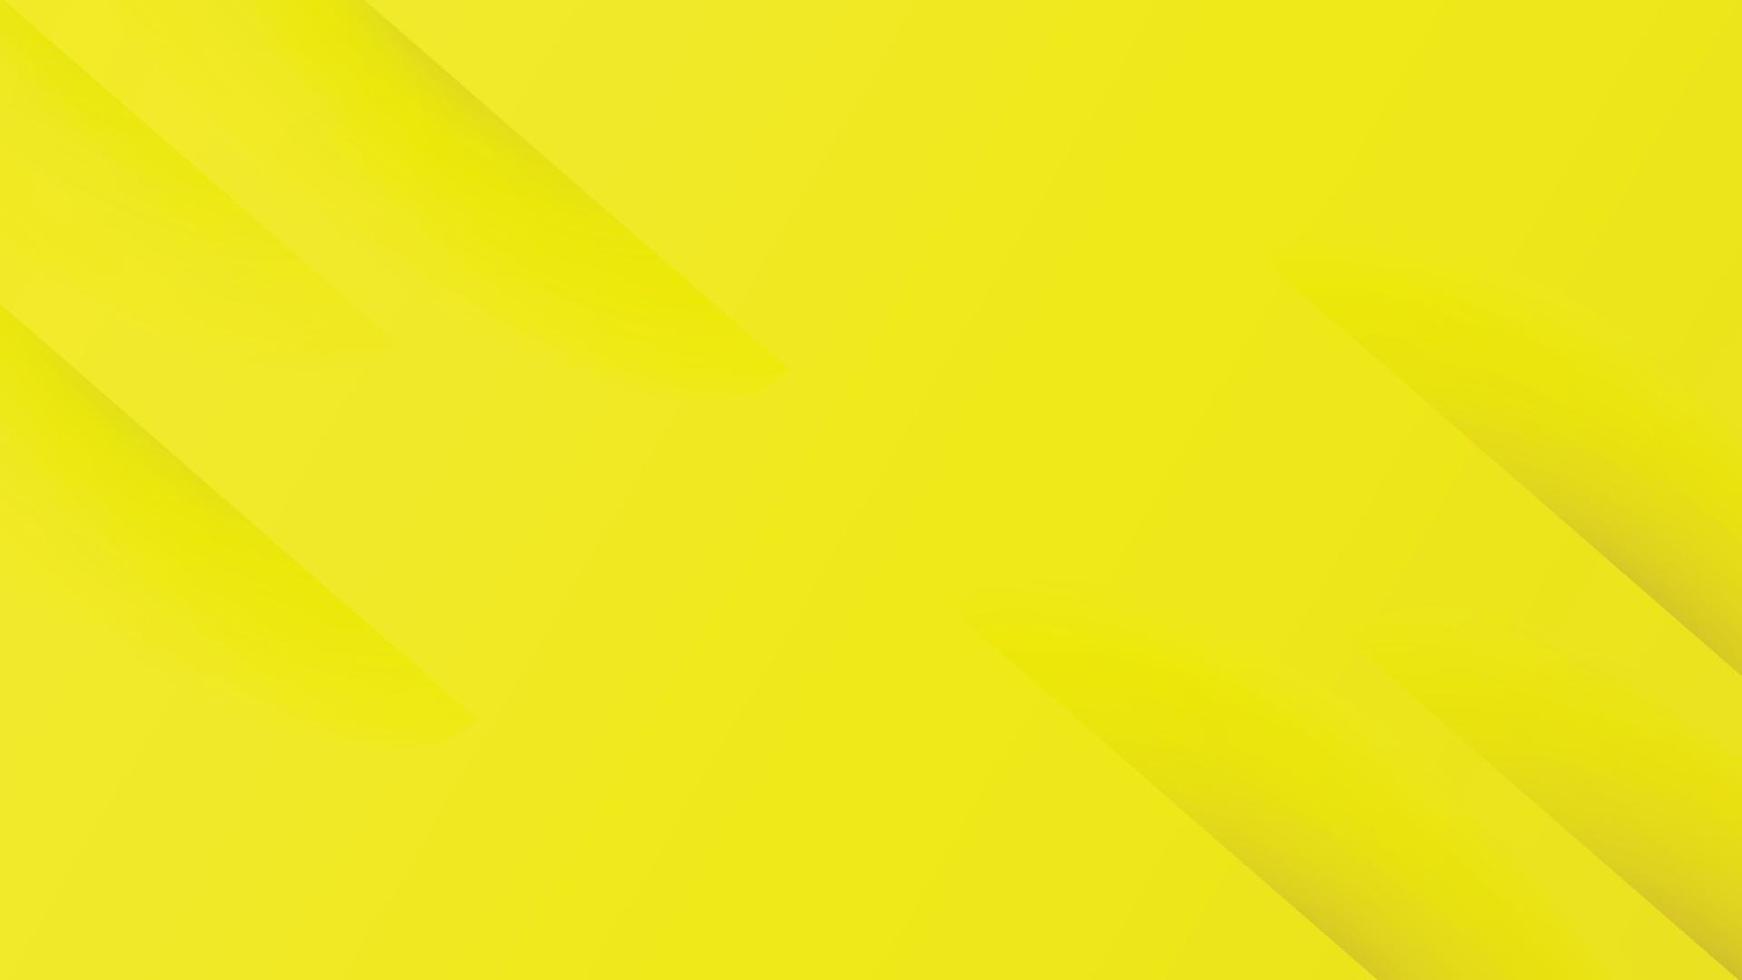 abstrakt gradient gul bakgrund med diagonala ränder. kan använda för omslagsbroschyrmall, affisch, bannerwebb, tryckt annons, etc. vektorillustration vektor